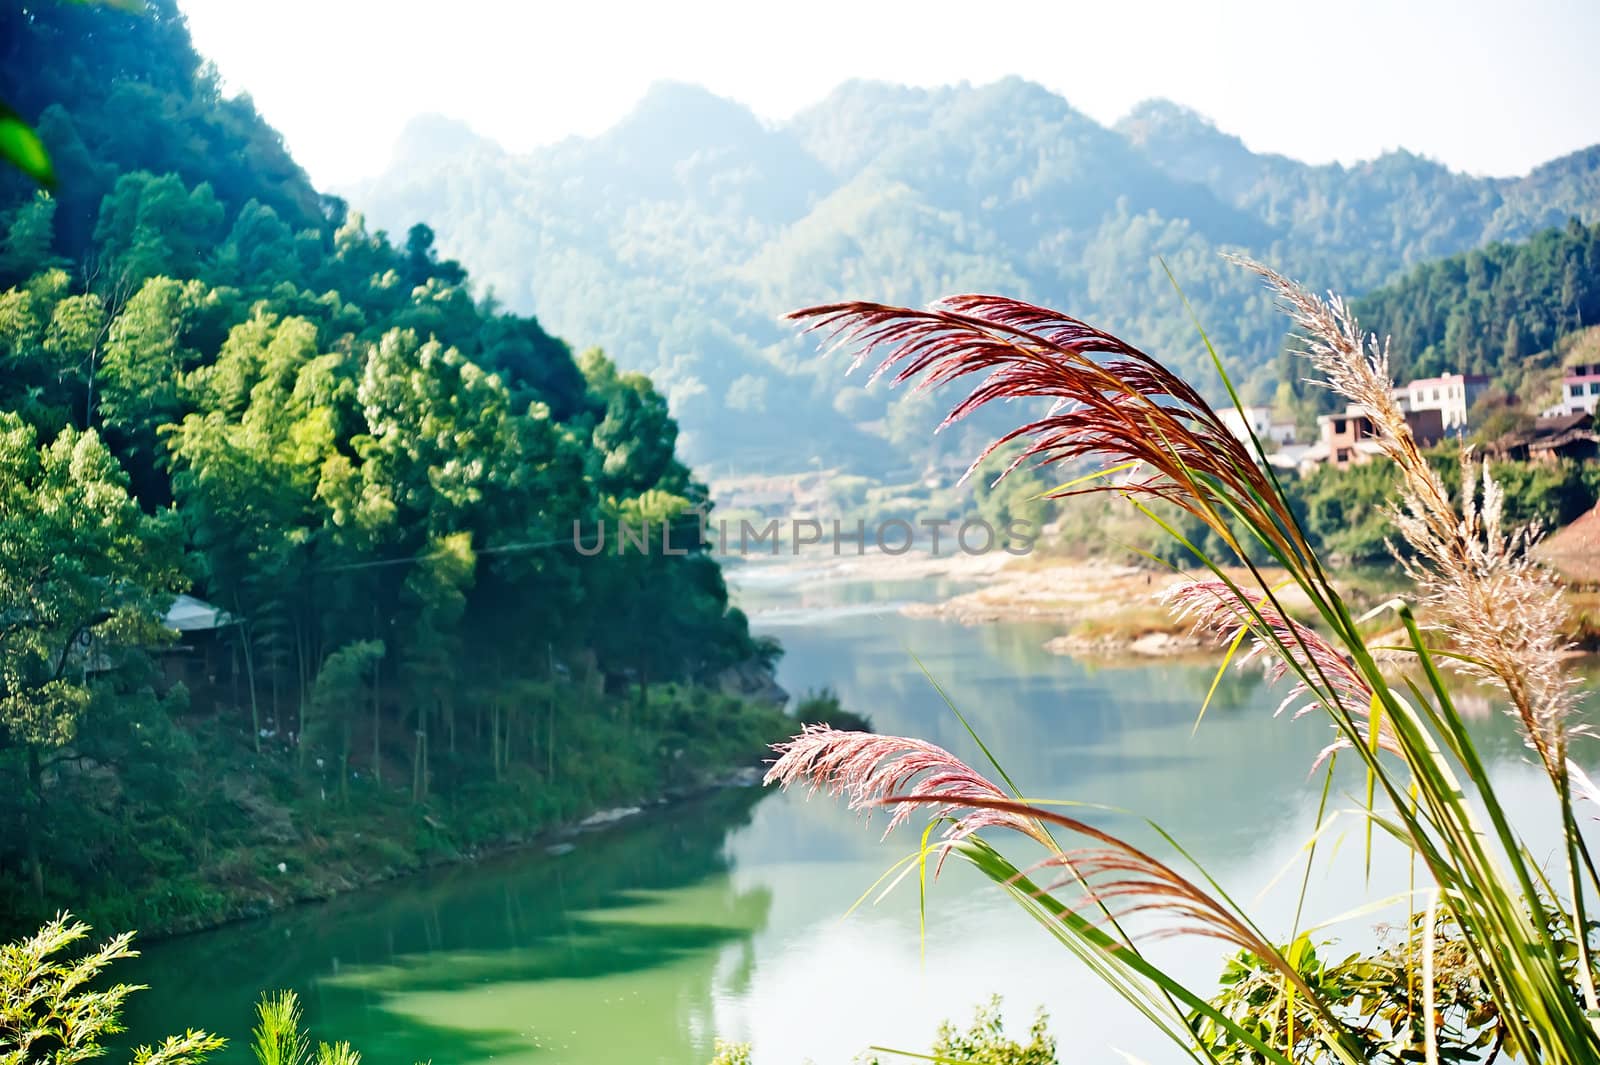 ZiYuan County,  Guangxi, China has abundant tourism resources